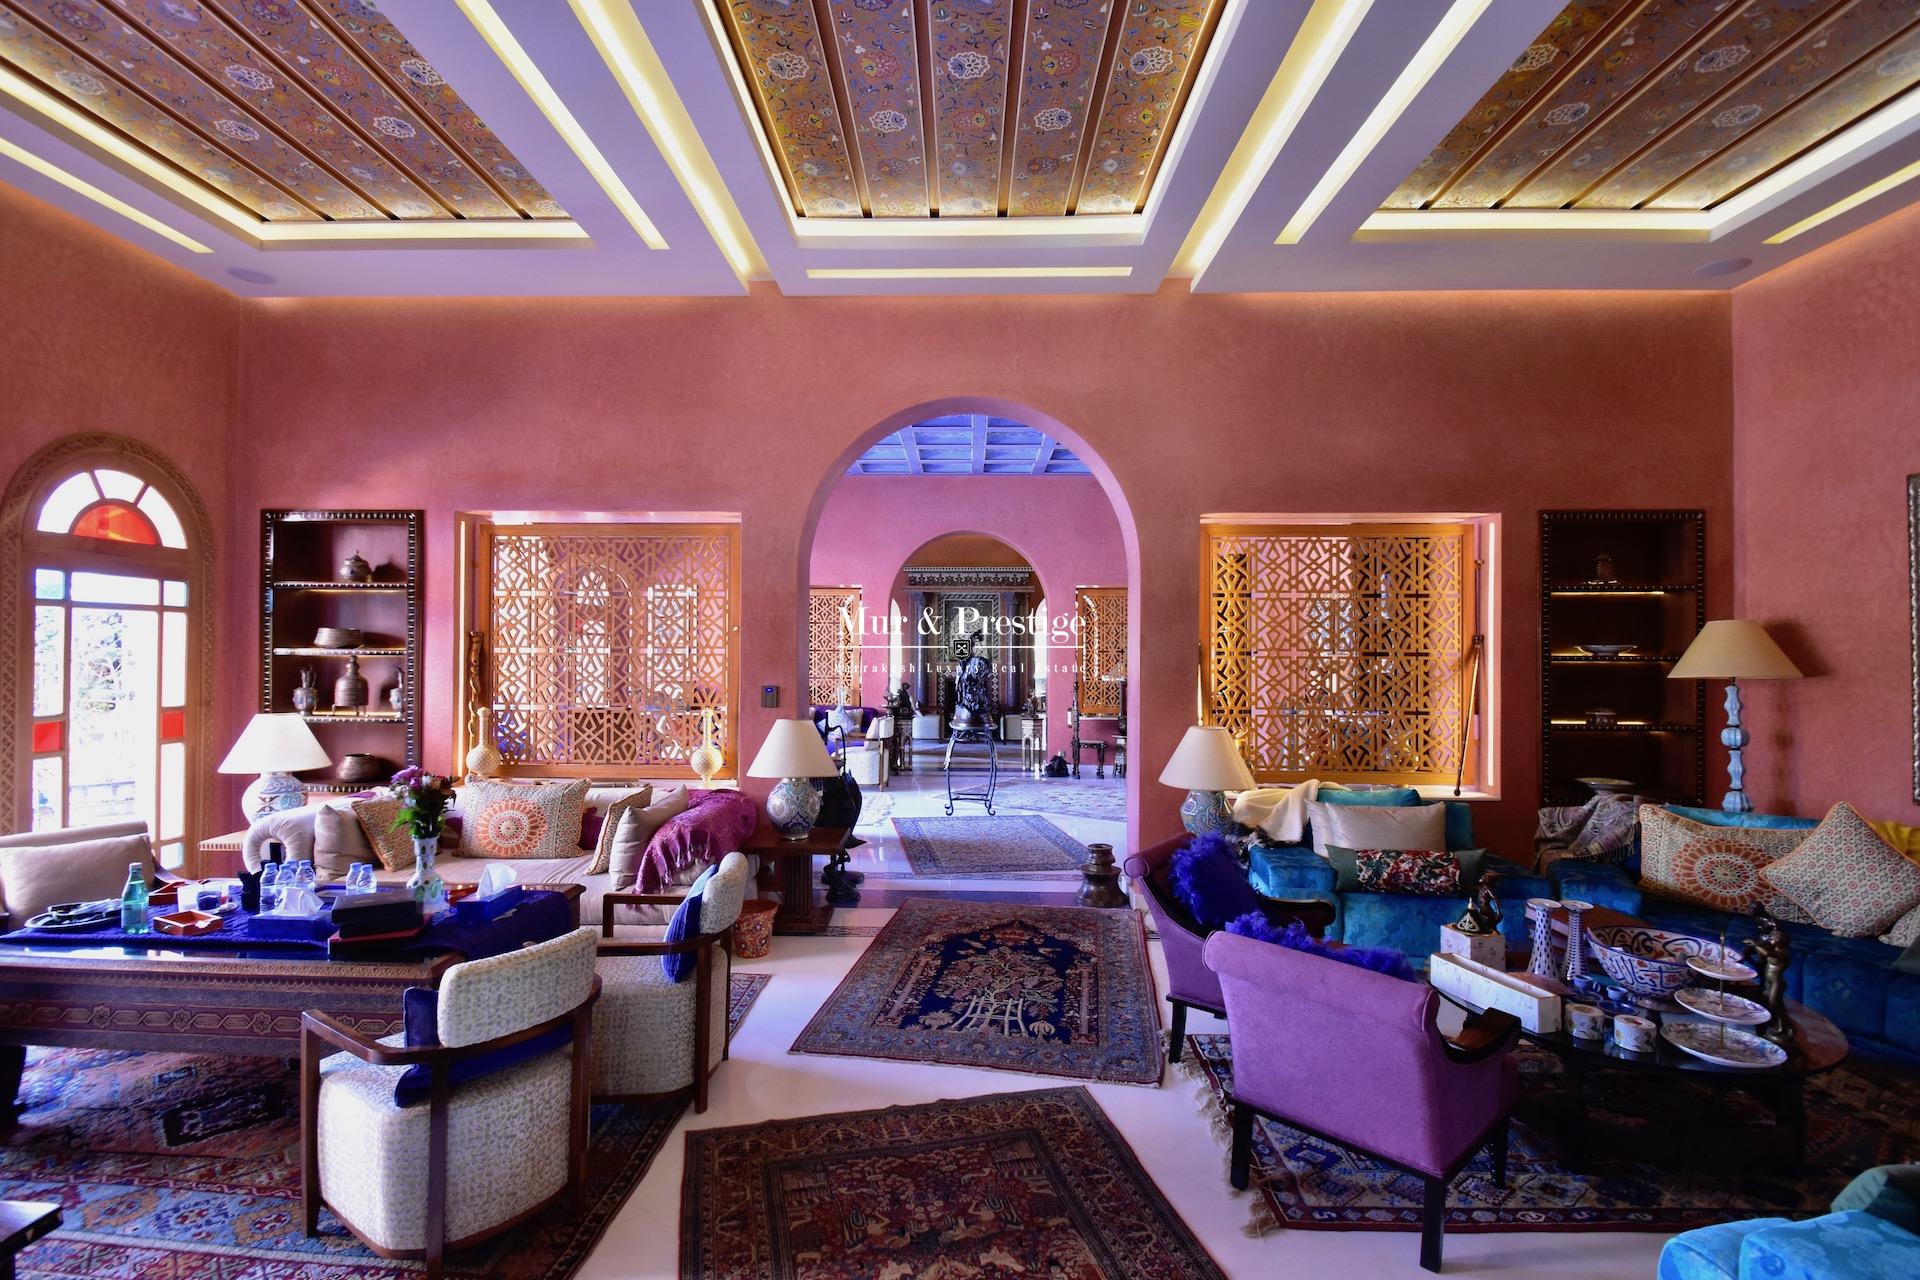 Palais à Vendre à la Palmeraie Marrakech -  Immobilier de Luxe - copie